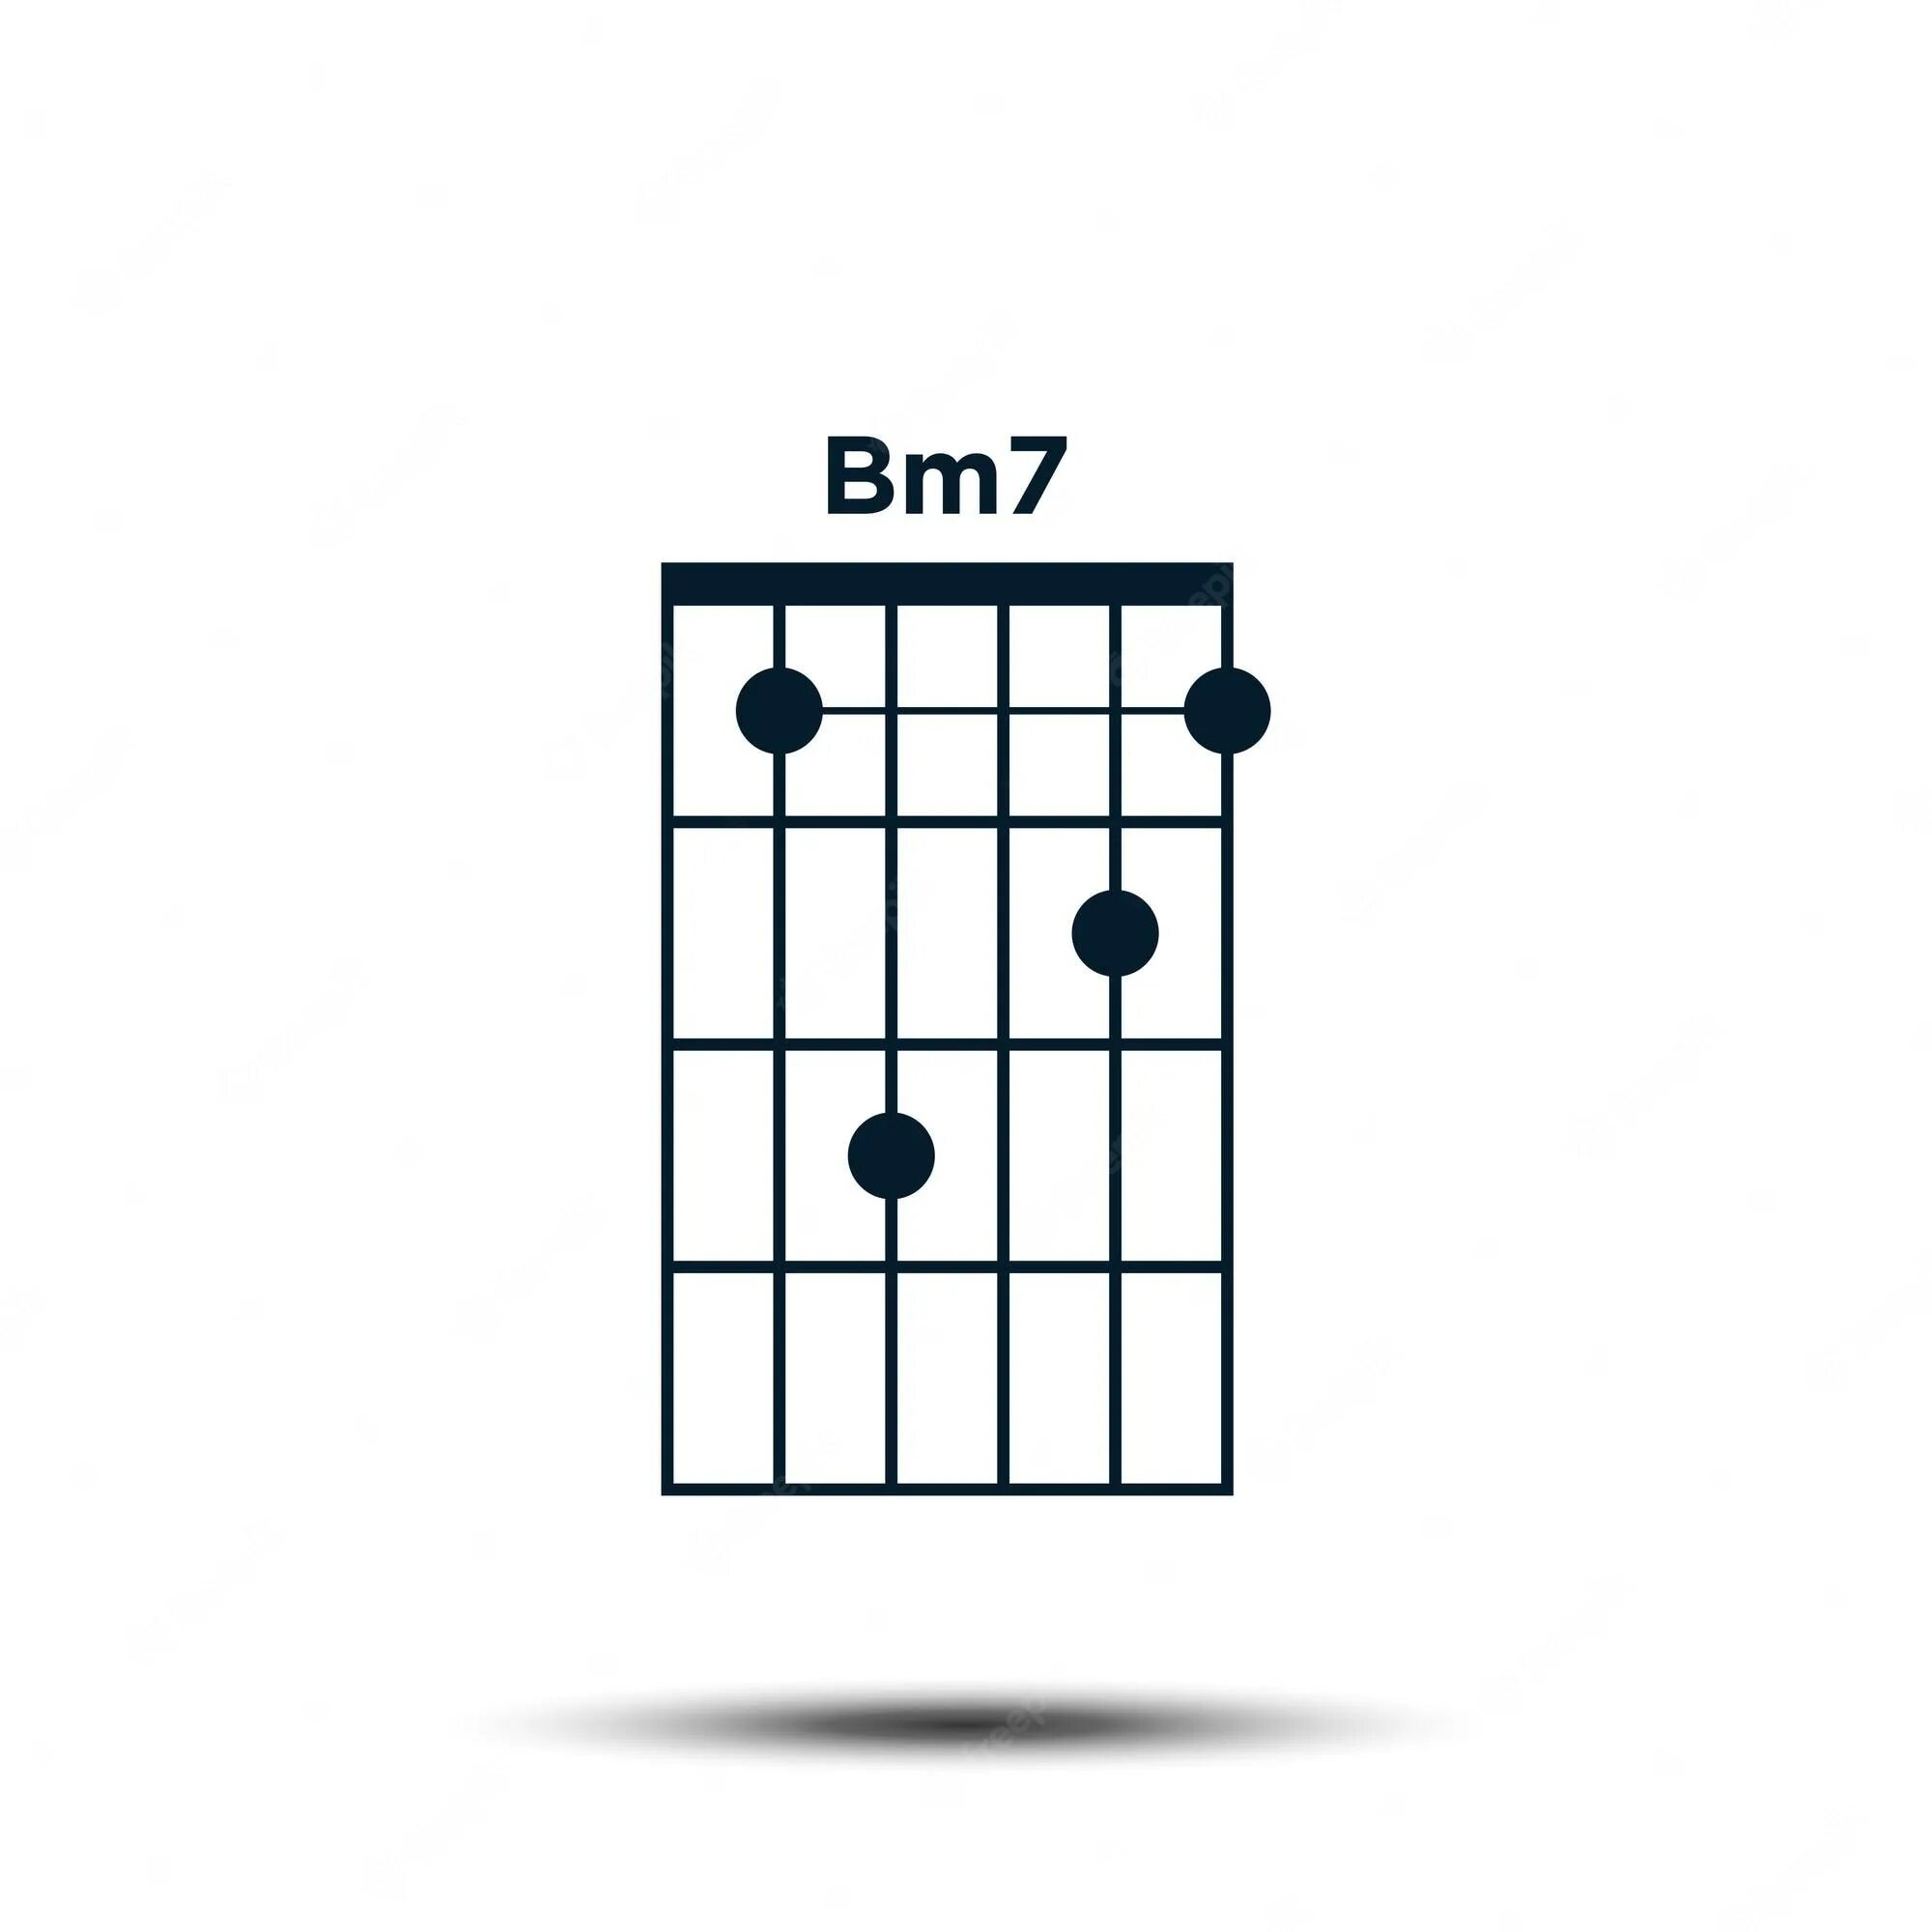 Аккорд БМ на гитаре. Гитарный Аккорд BM. Аккорд BM на гитаре 6 струн. Bm7 Аккорд на гитаре. Как играть на гитаре без баре